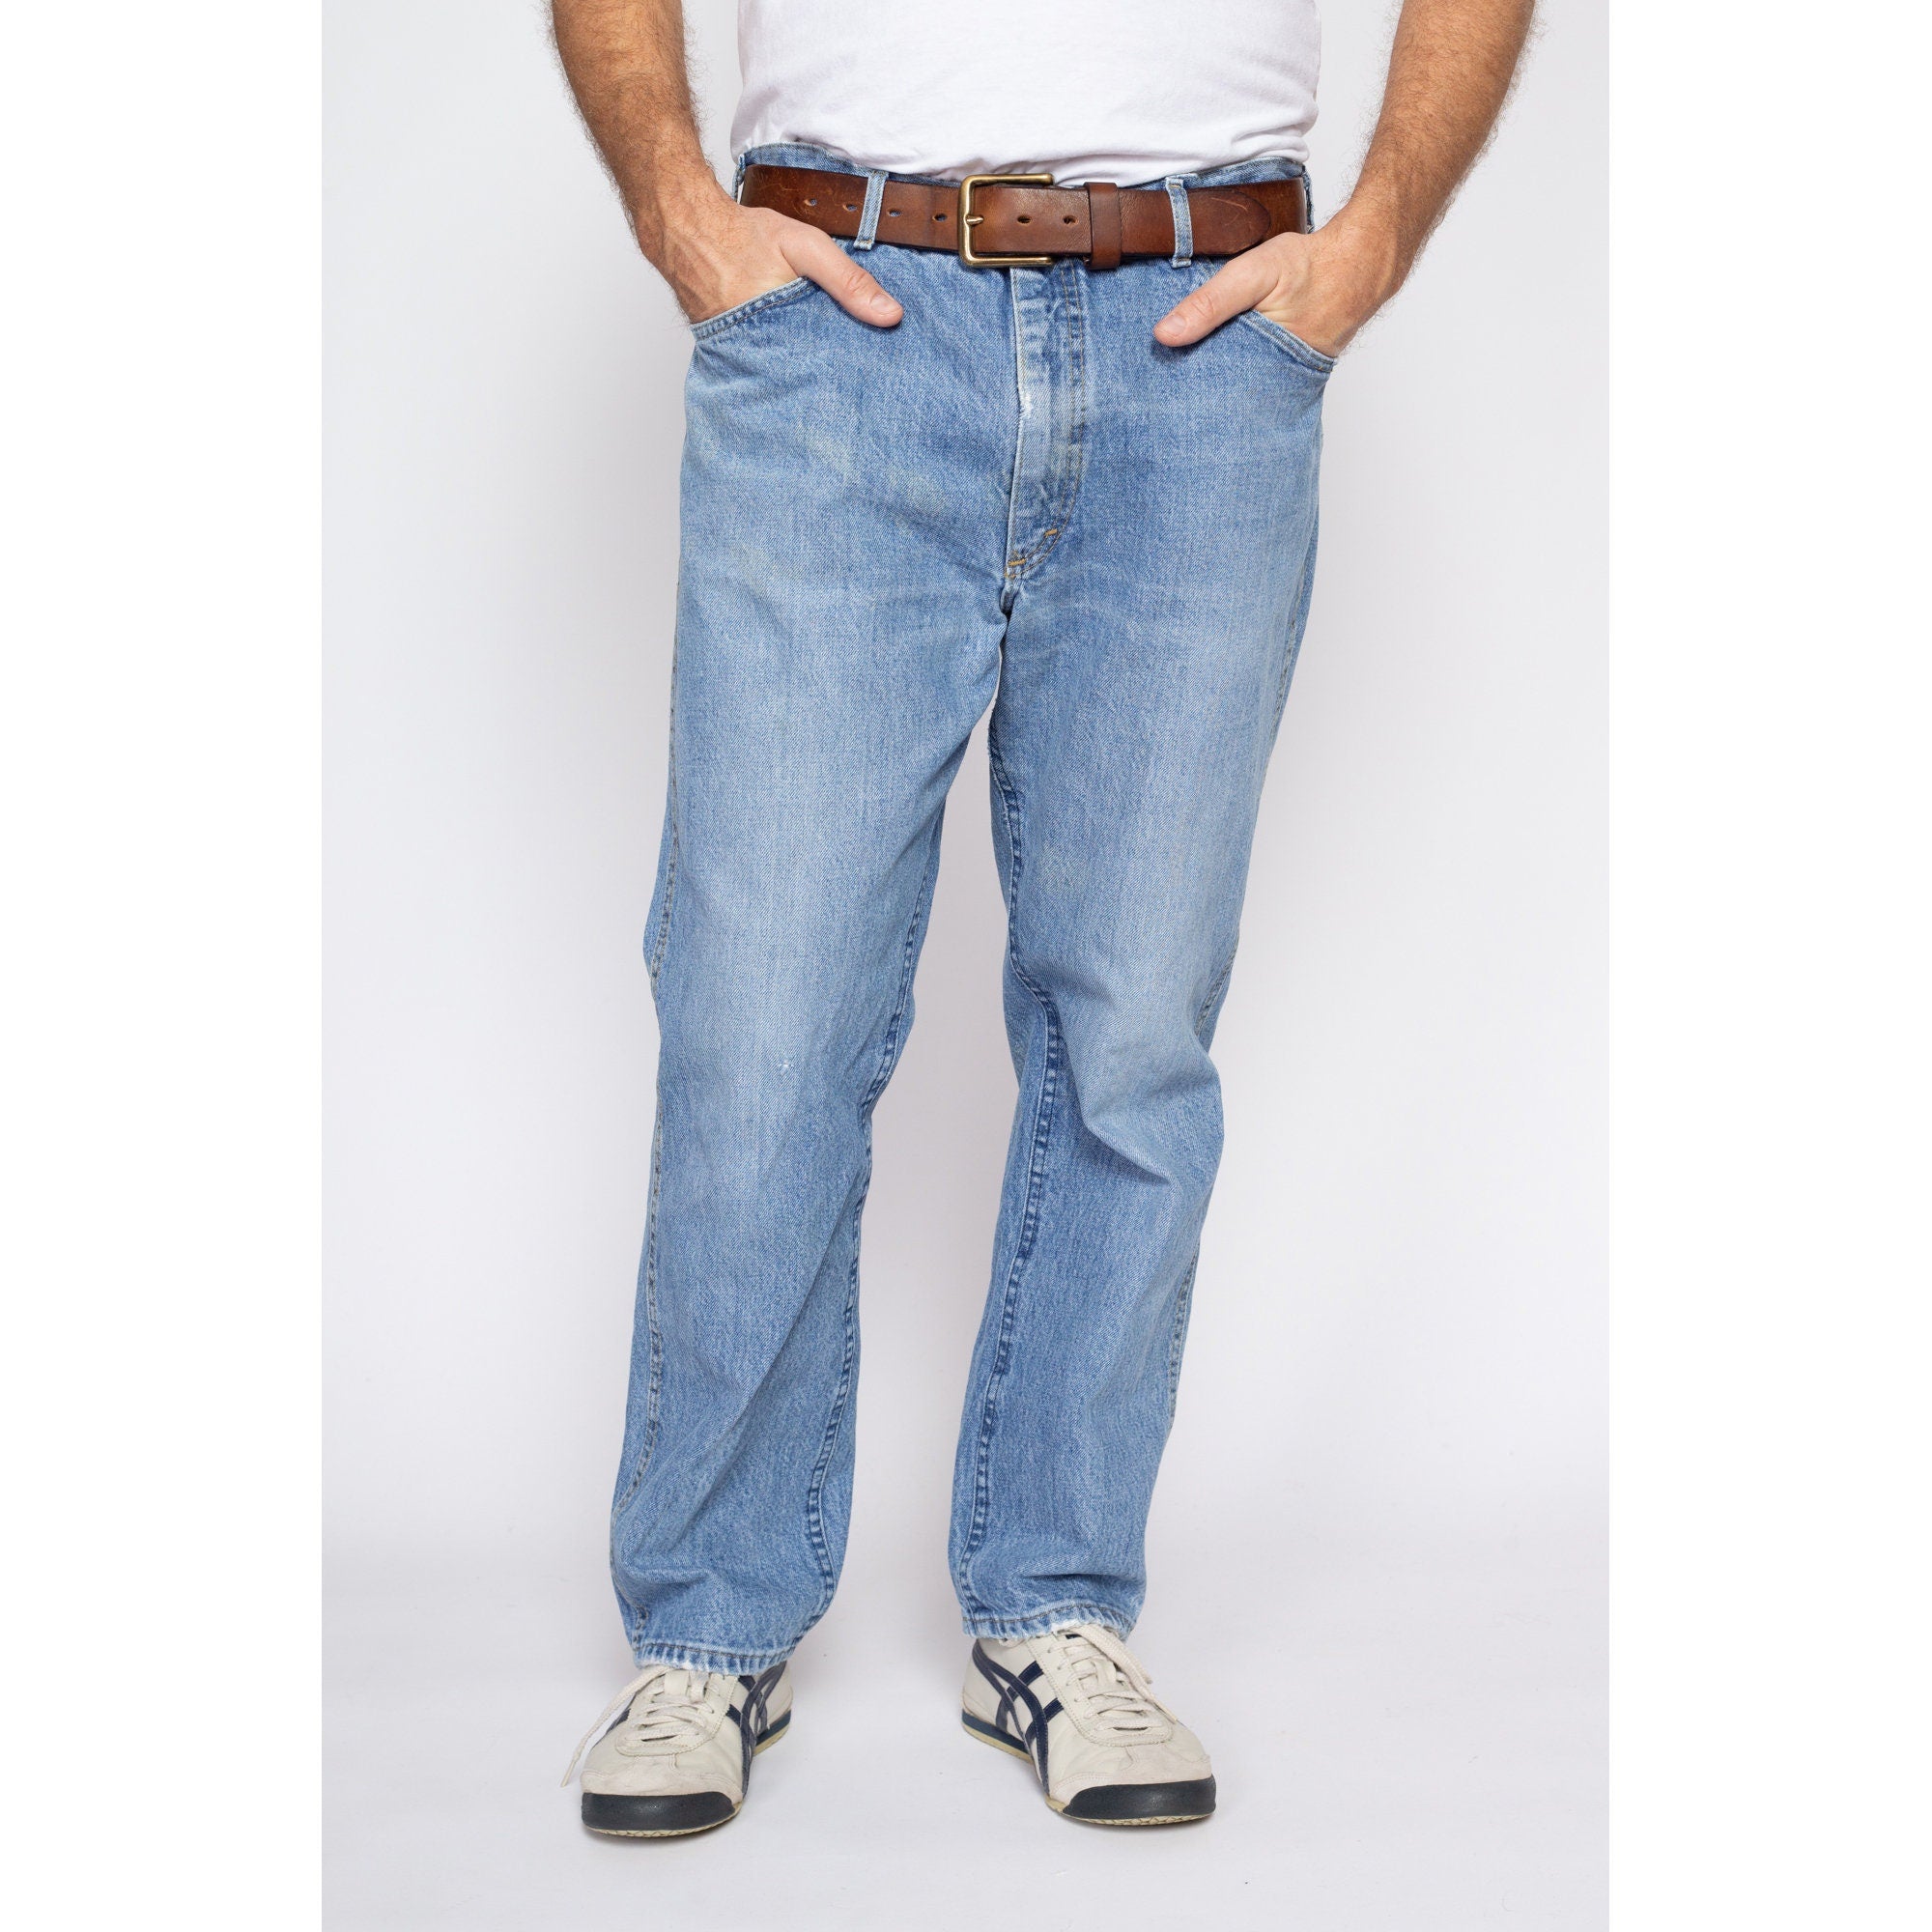 Vintage Wrangler Denim Jeans (sz. W31 L36) - Ragstock.com